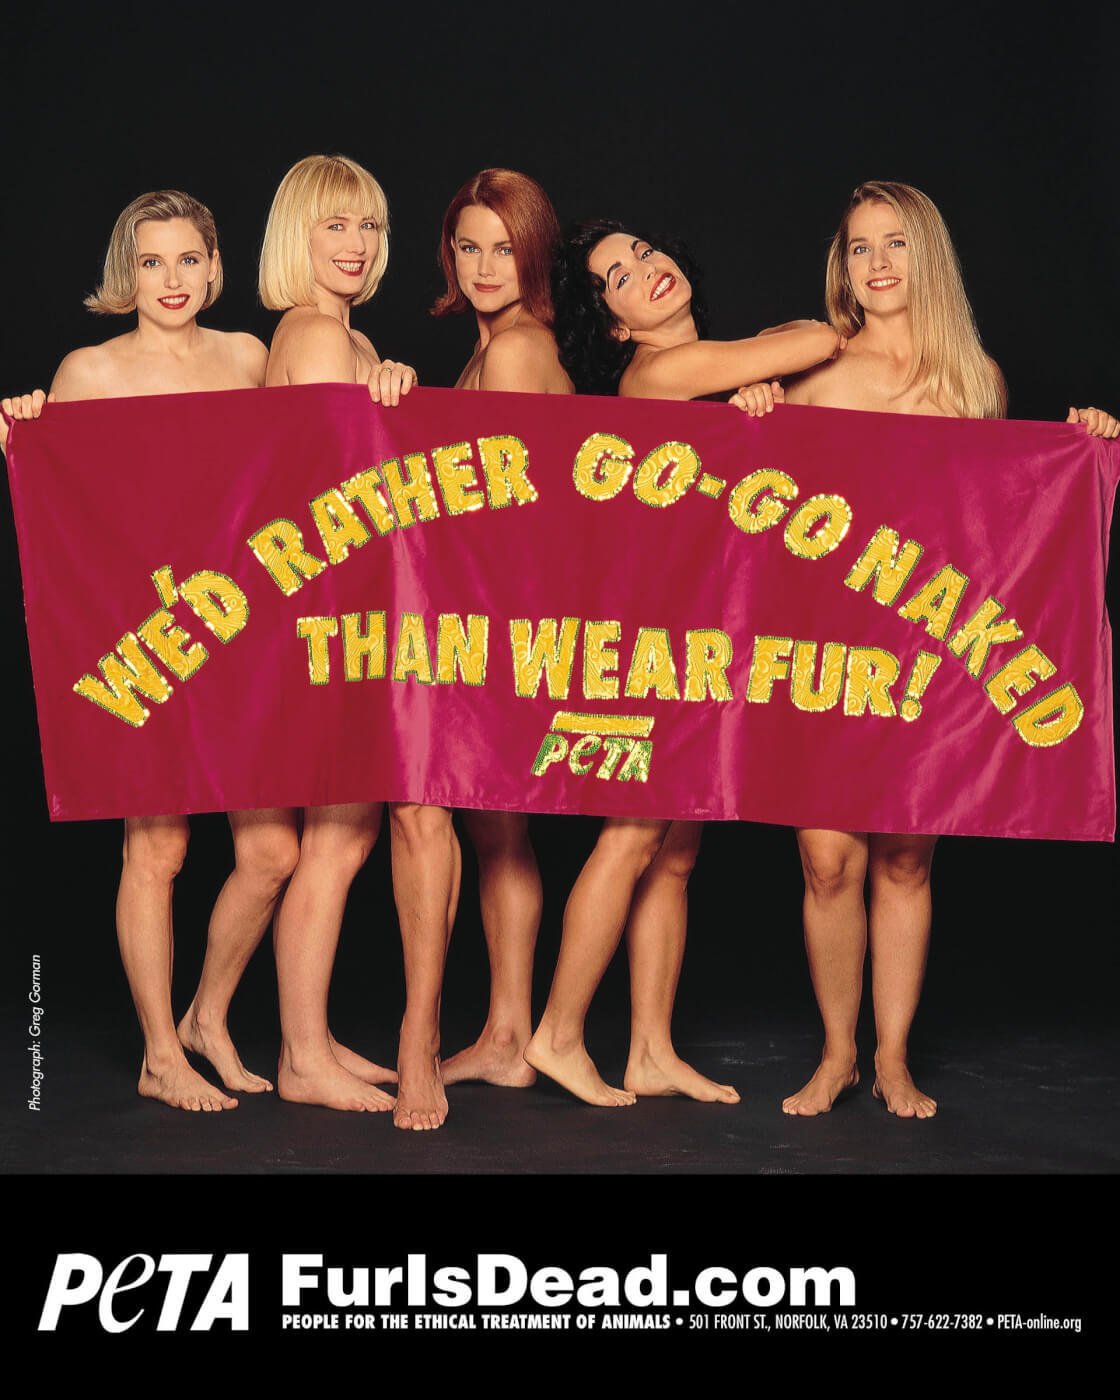 Ezzel a plakáttal, melyen a The Go-Go szerepel indult útjára a 30 éven át tartó szőrmeelenes kampány